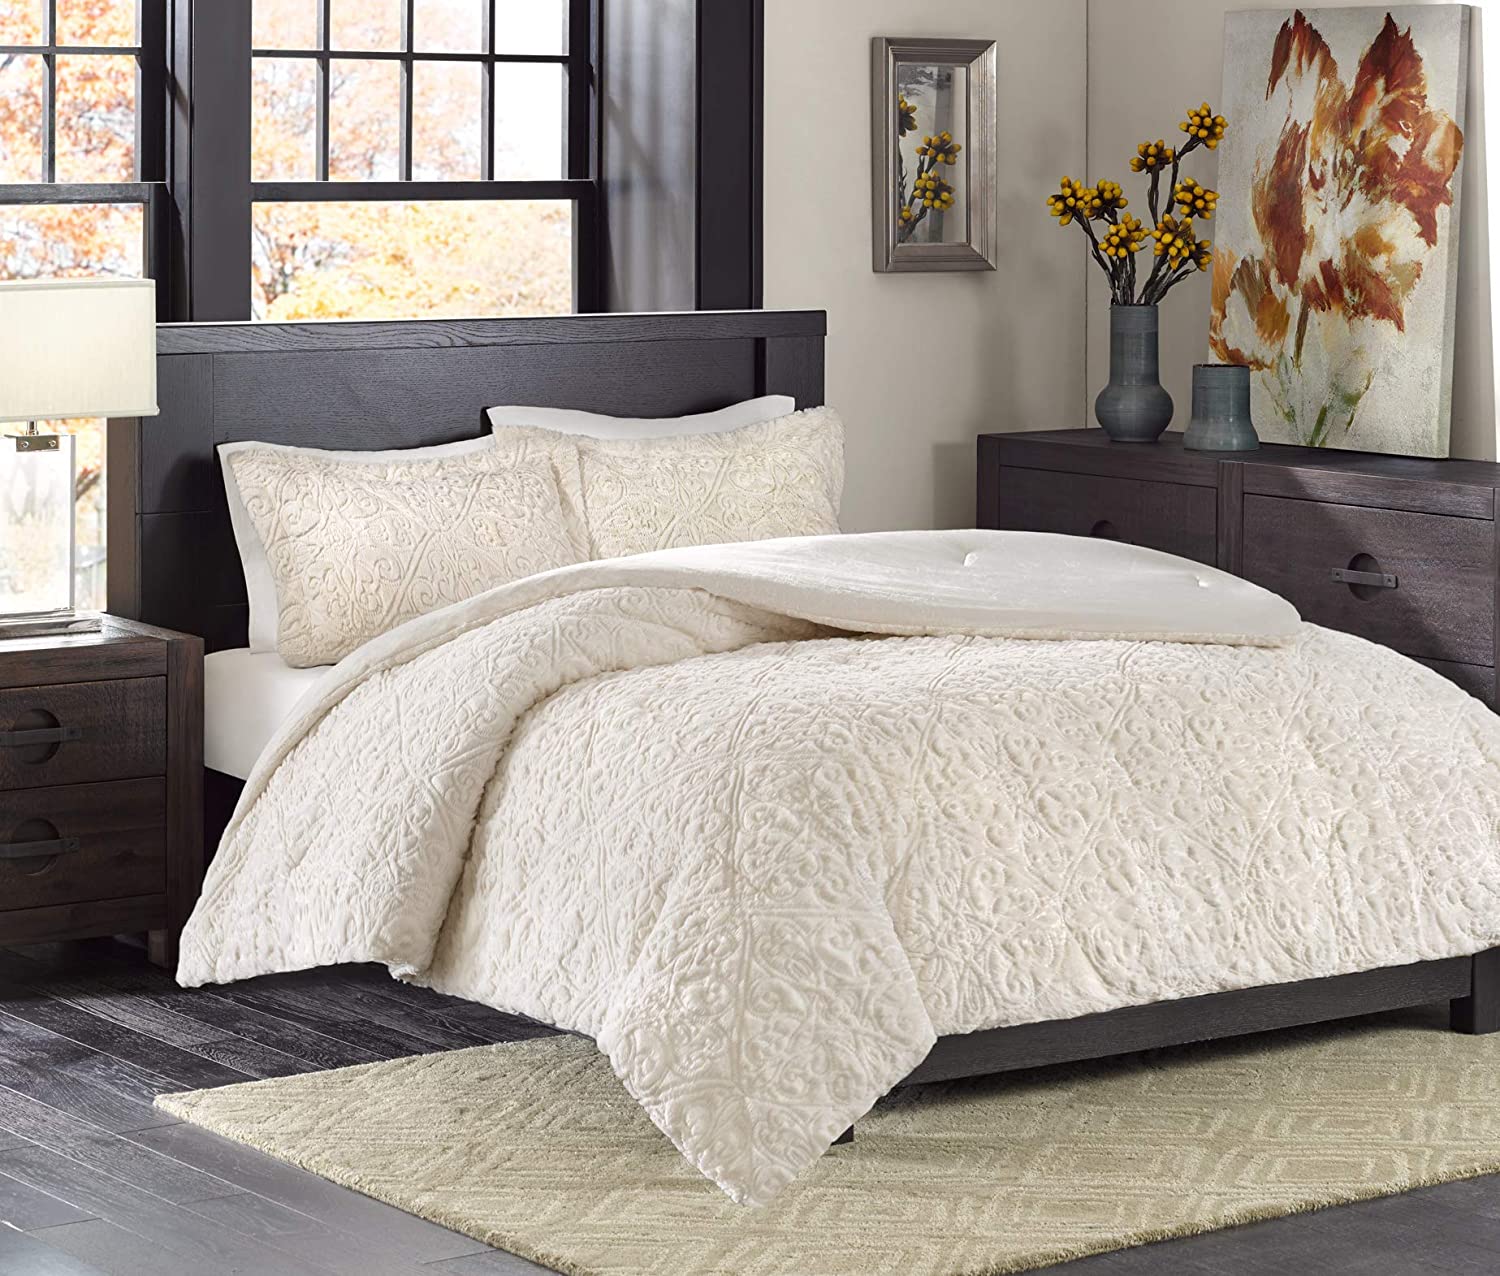 Madison Park Bismarck King Size Bed, King Size Bed Comforter Set White